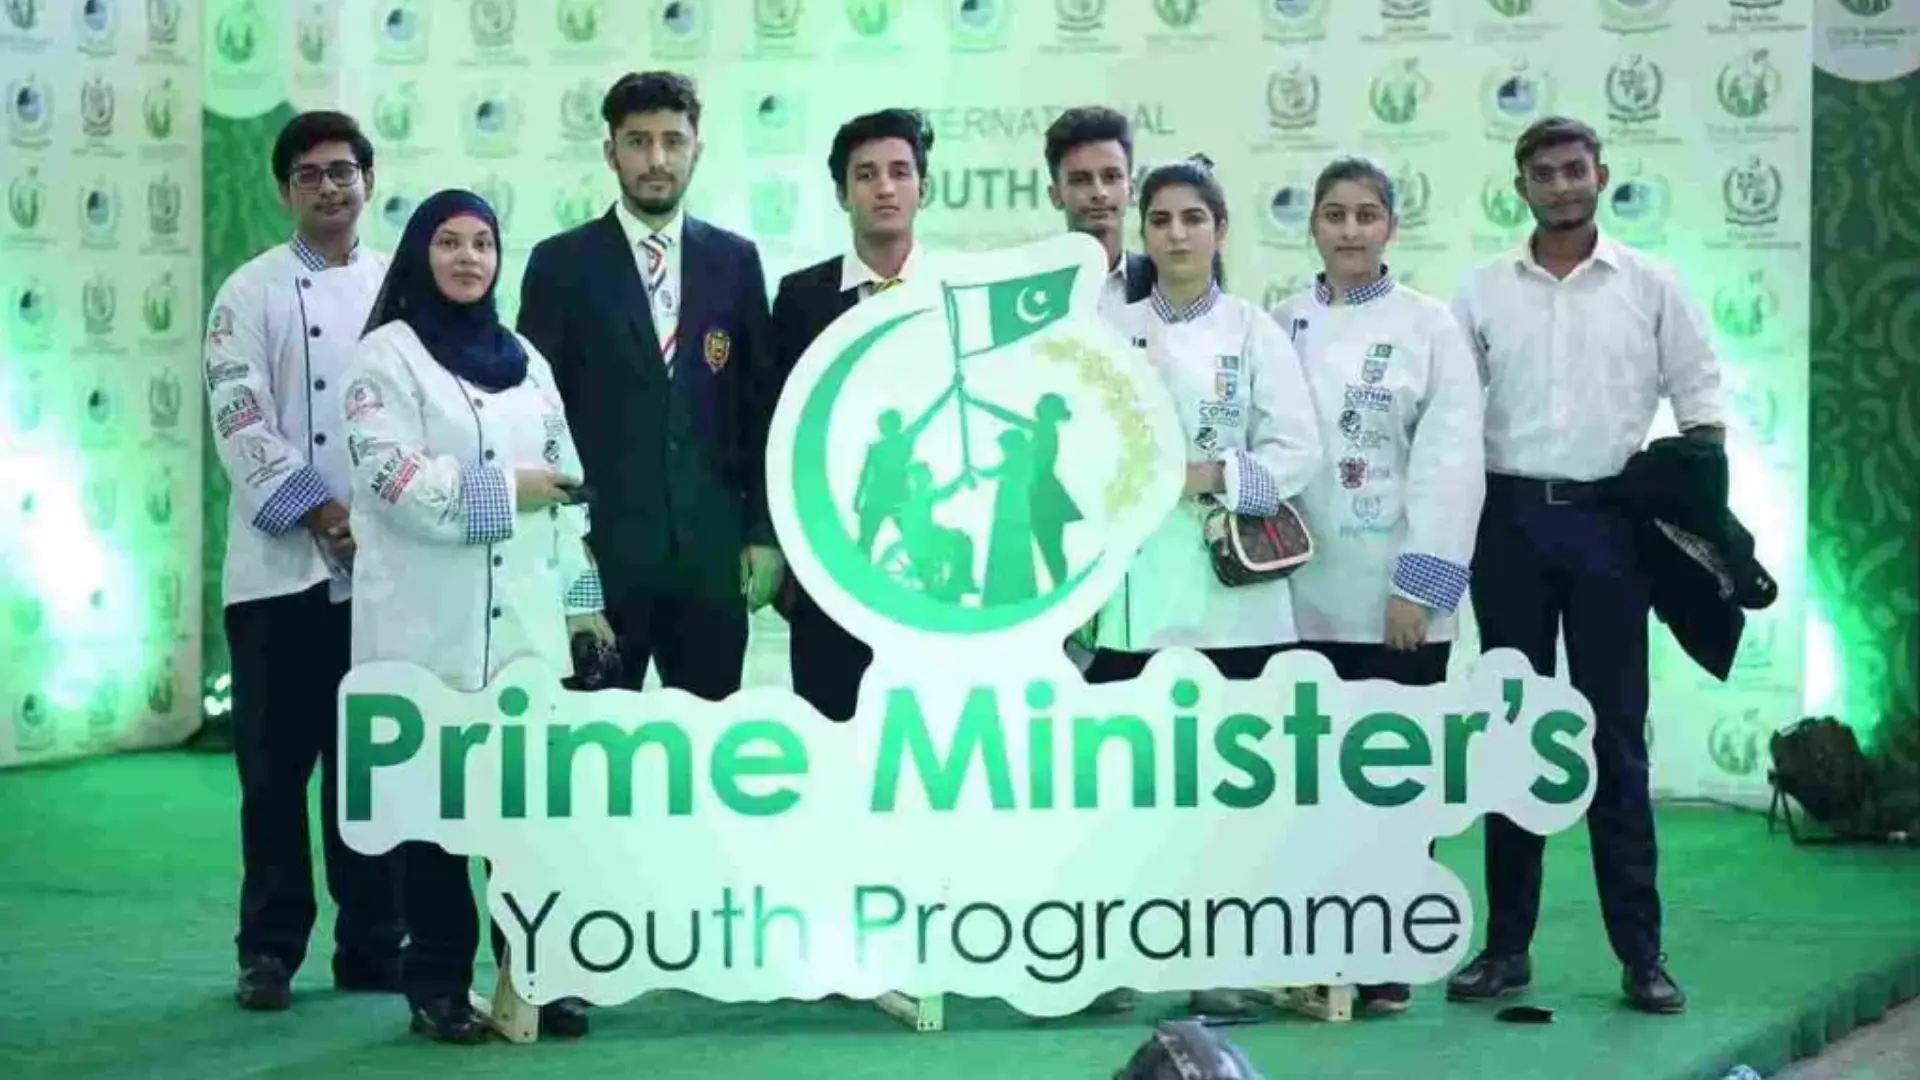 Prime Minister Youth Development Program